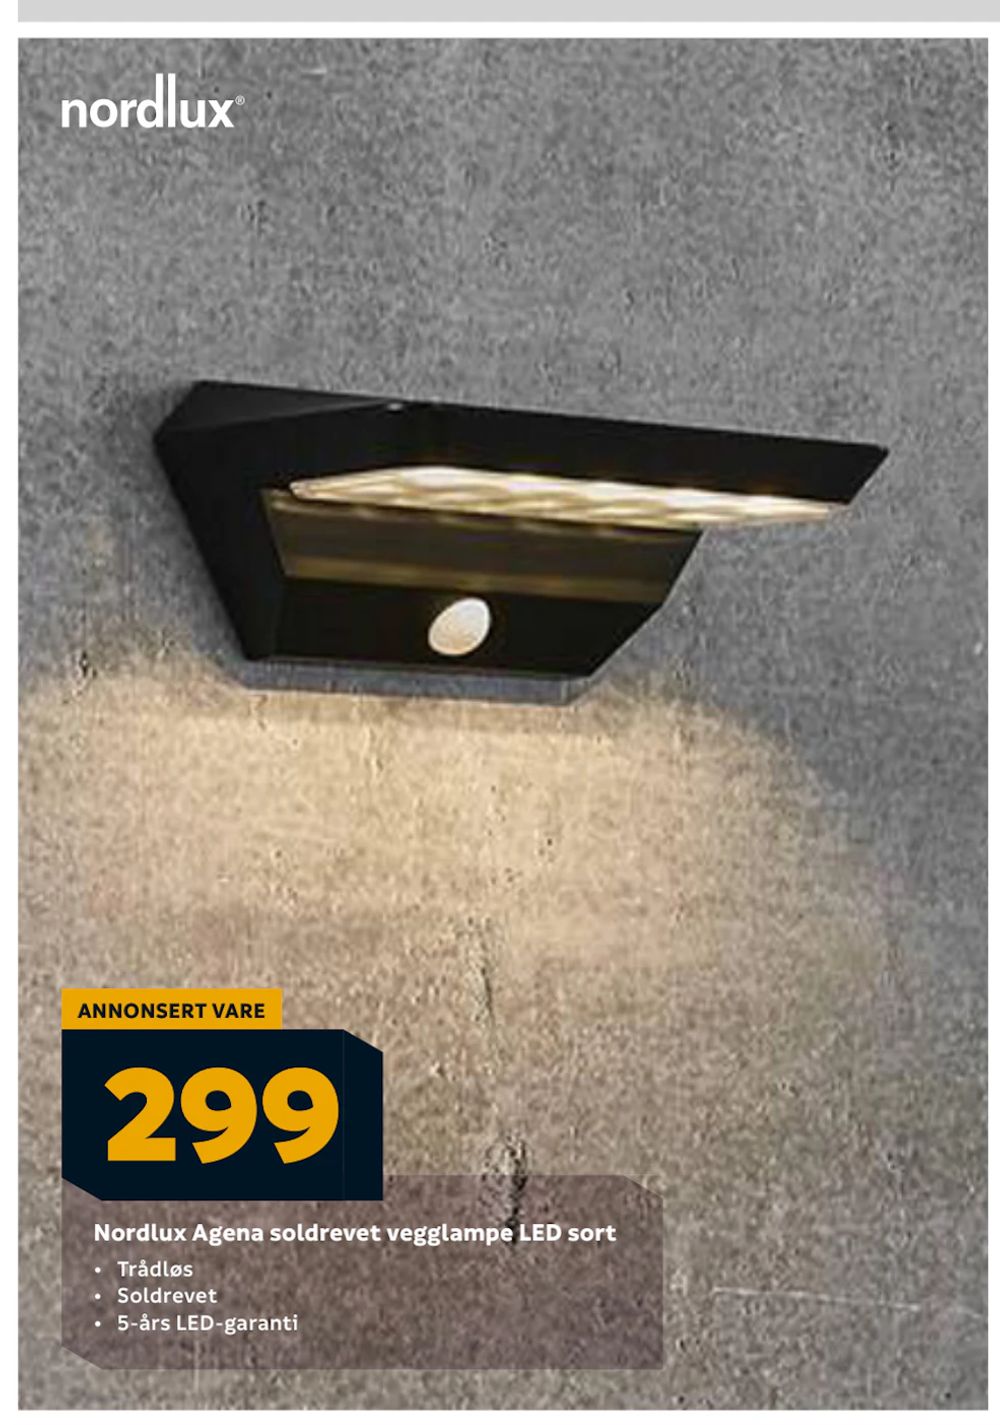 Tilbud på Nordlux Agena soldrevet vegglampe LED sort fra Megaflis til 299 kr